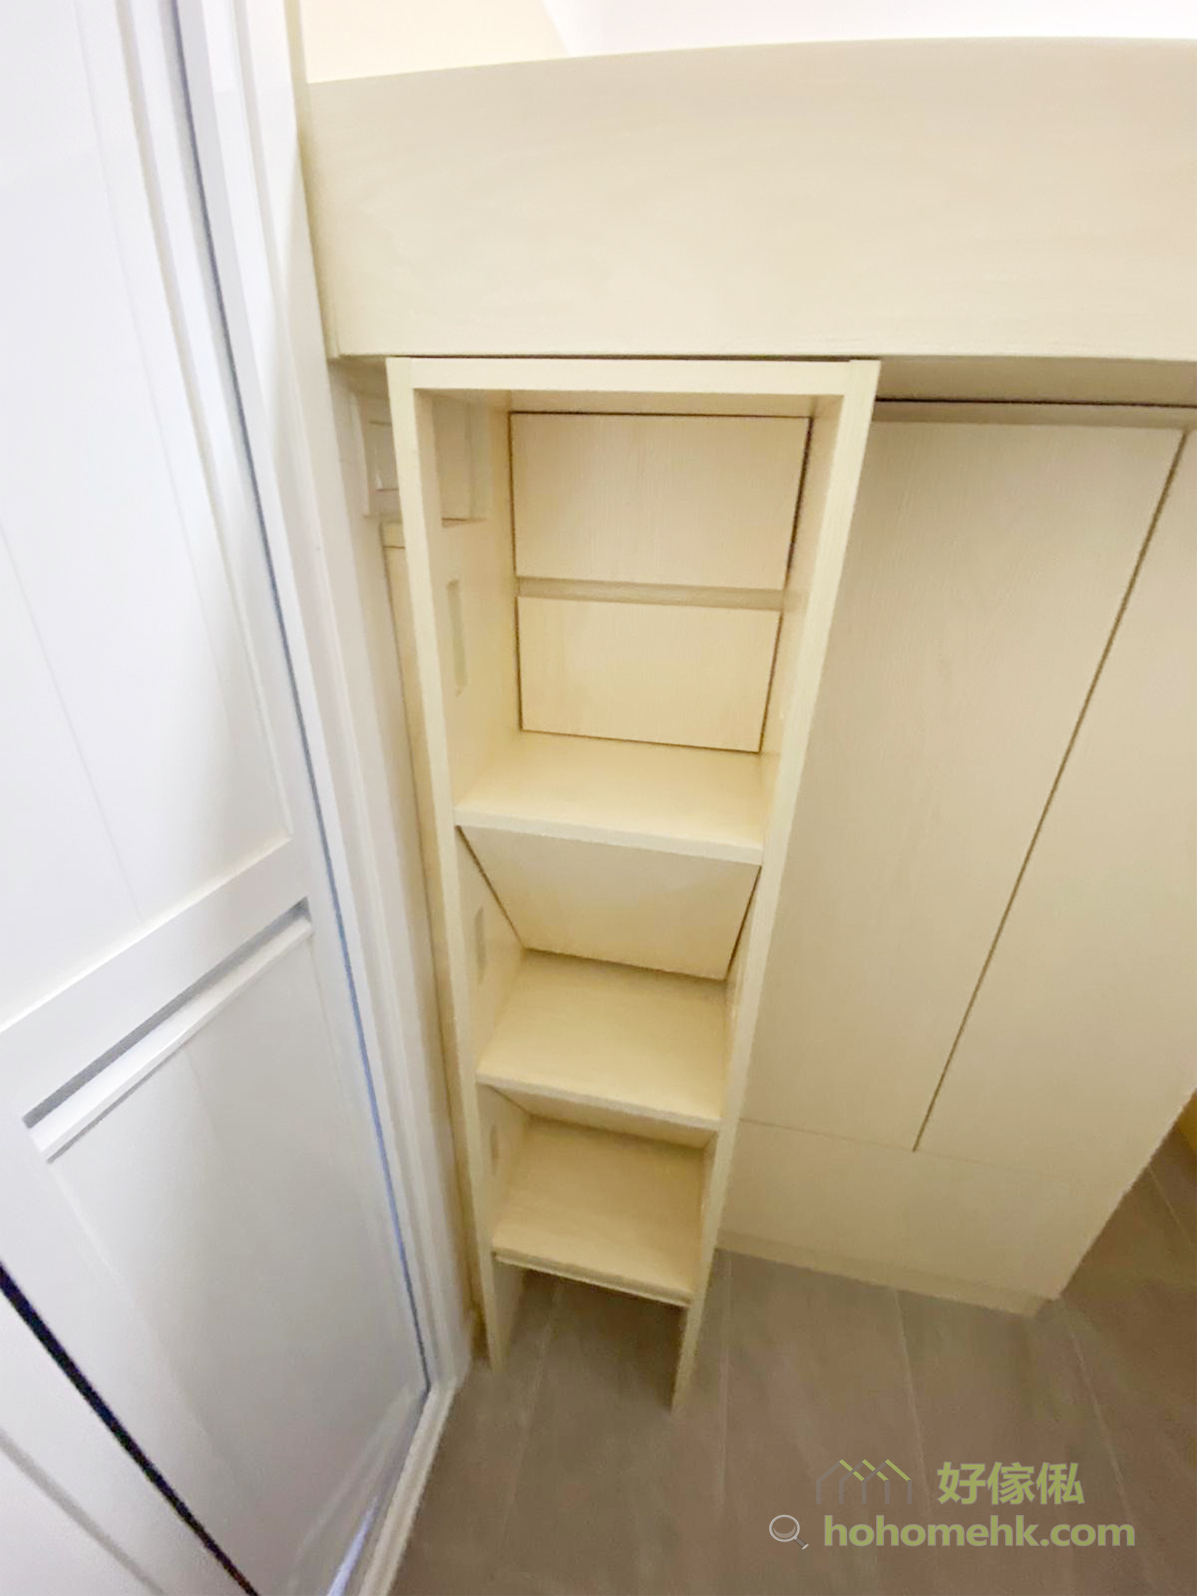 樓梯櫃讓工人姐姐可以輕鬆爬上上格床，同時又有儲物的功能，善用空間